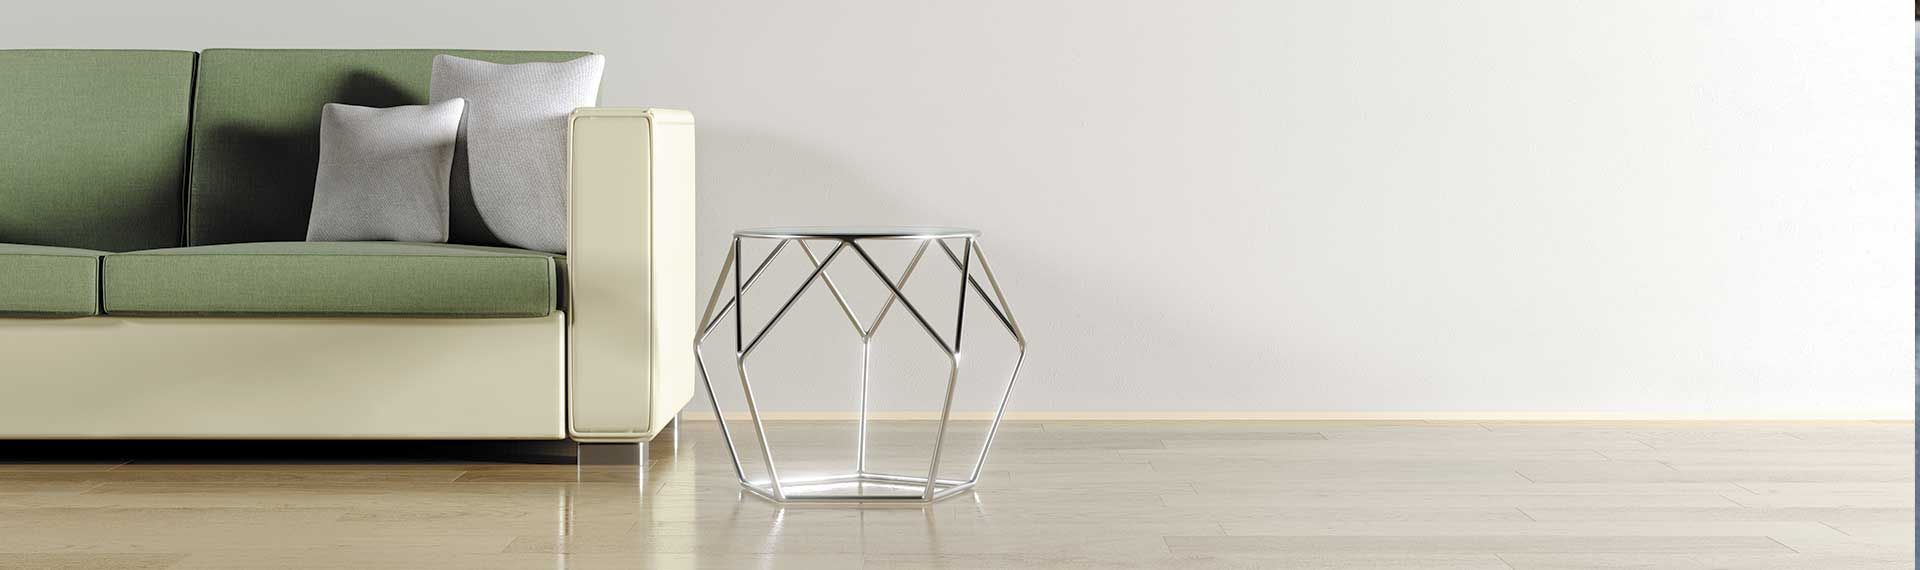 Sillón y mesa de centro en un ambiente minimalista